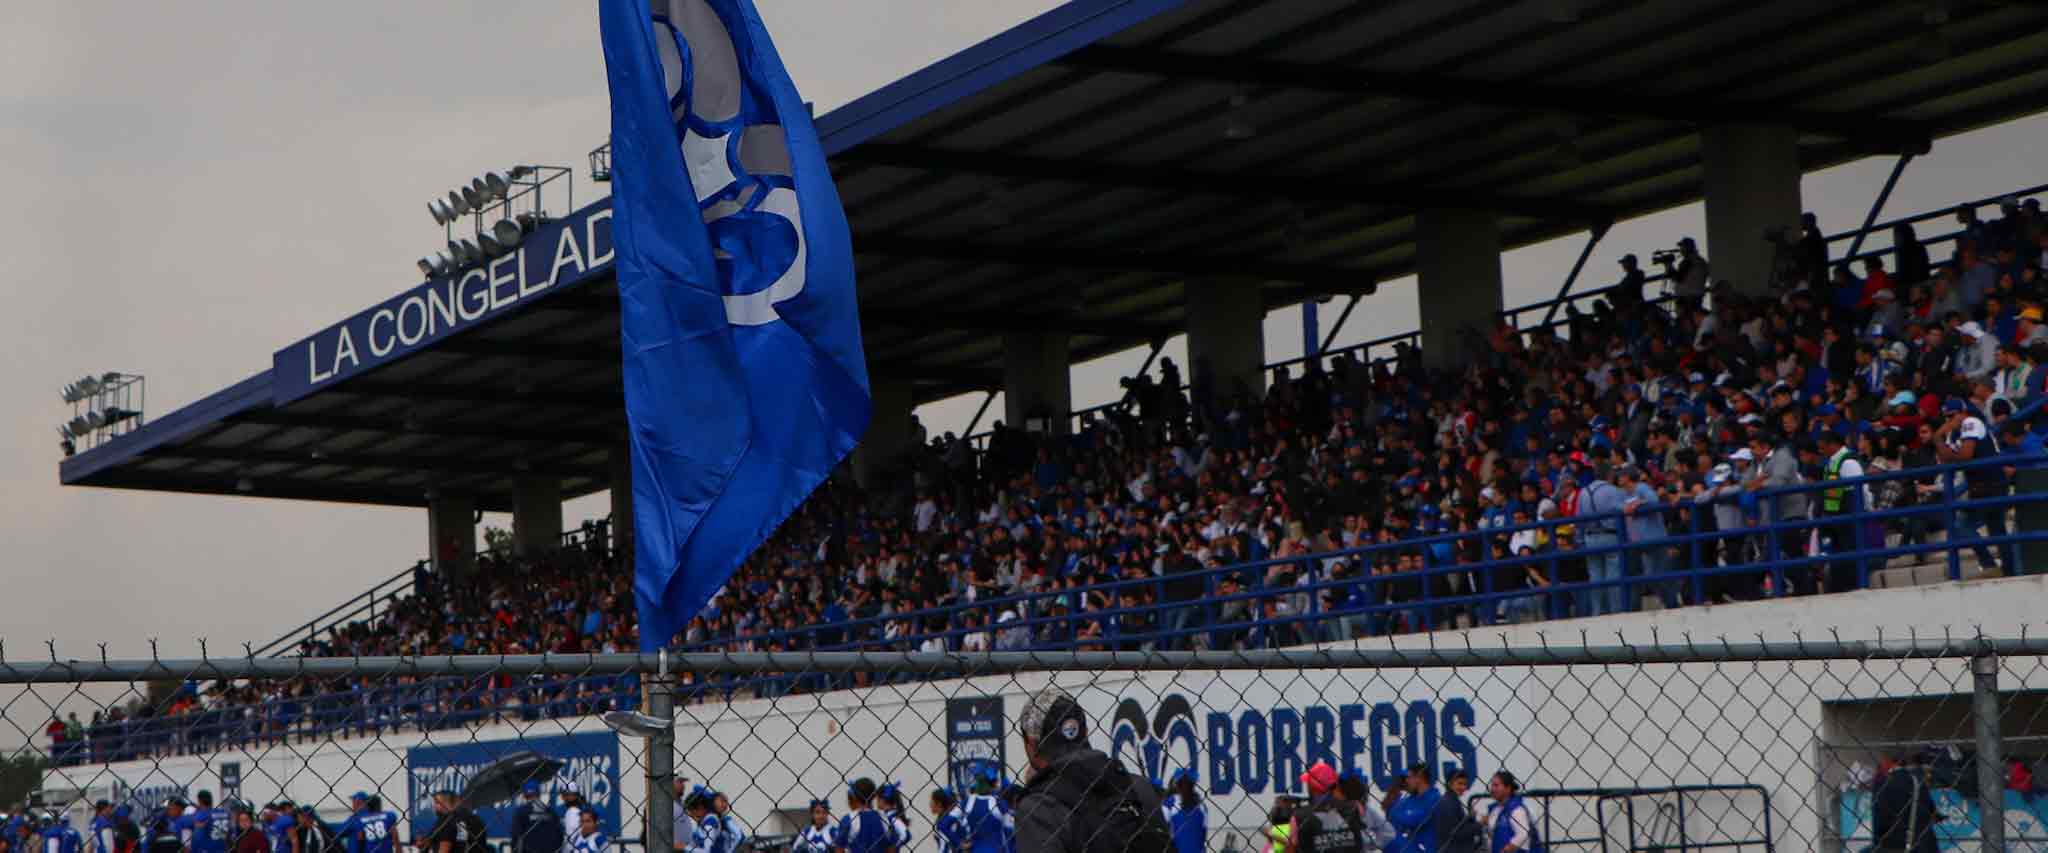 Estadio La Congeladora - Gradas